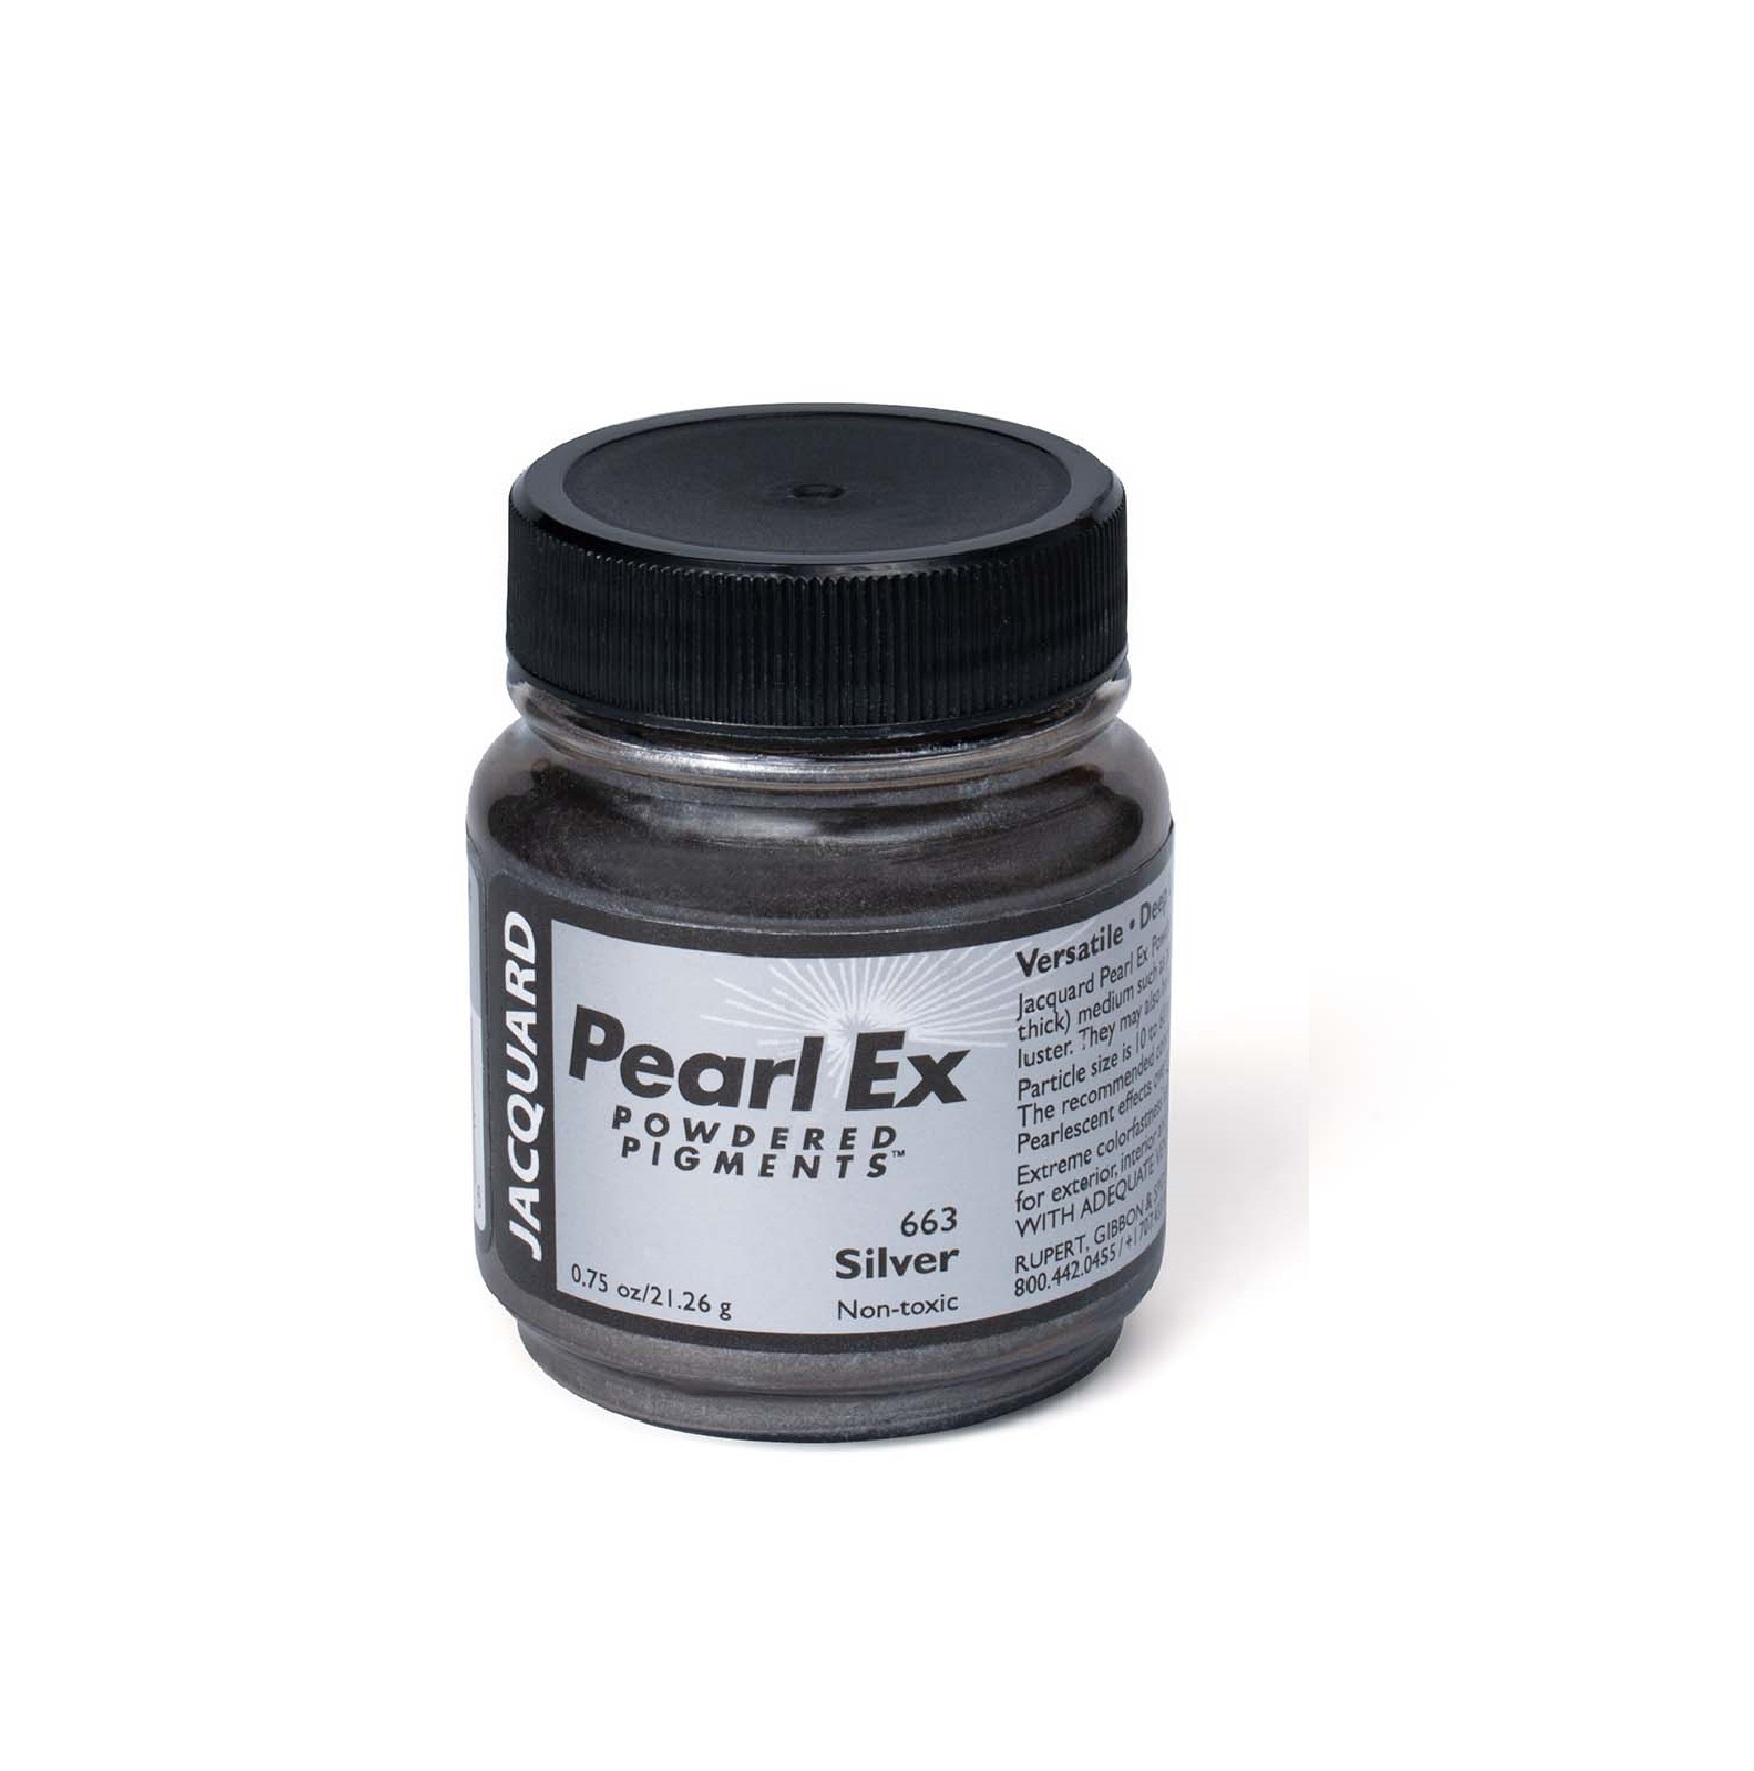 PIGMENTO EPOXY PEARL EX 663 SILVER X 21.26 g